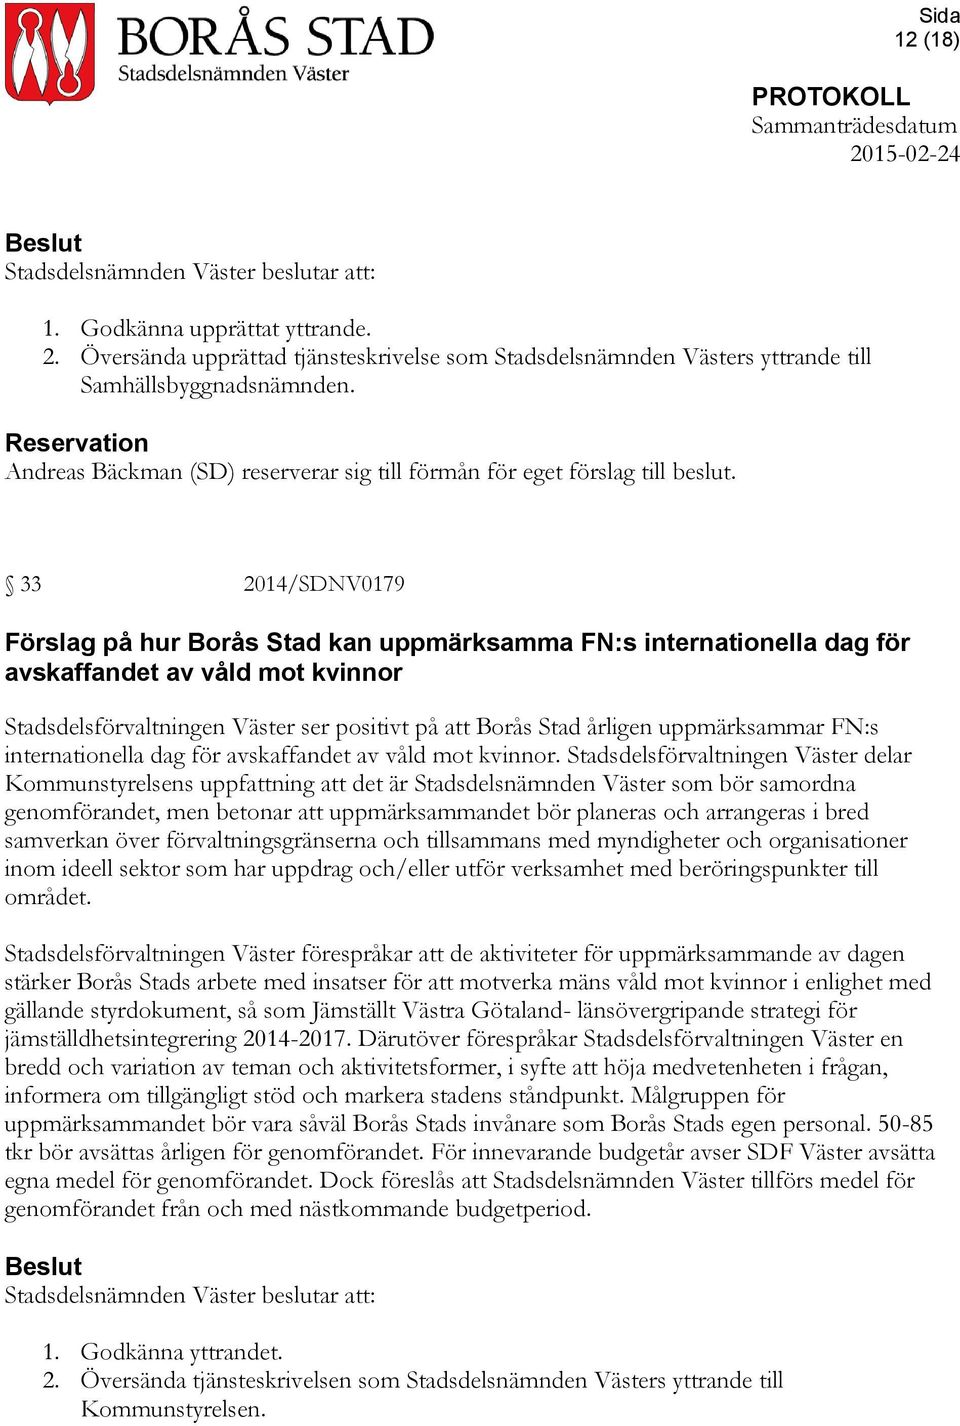 33 2014/SDNV0179 Förslag på hur Borås Stad kan uppmärksamma FN:s internationella dag för avskaffandet av våld mot kvinnor Stadsdelsförvaltningen Väster ser positivt på att Borås Stad årligen